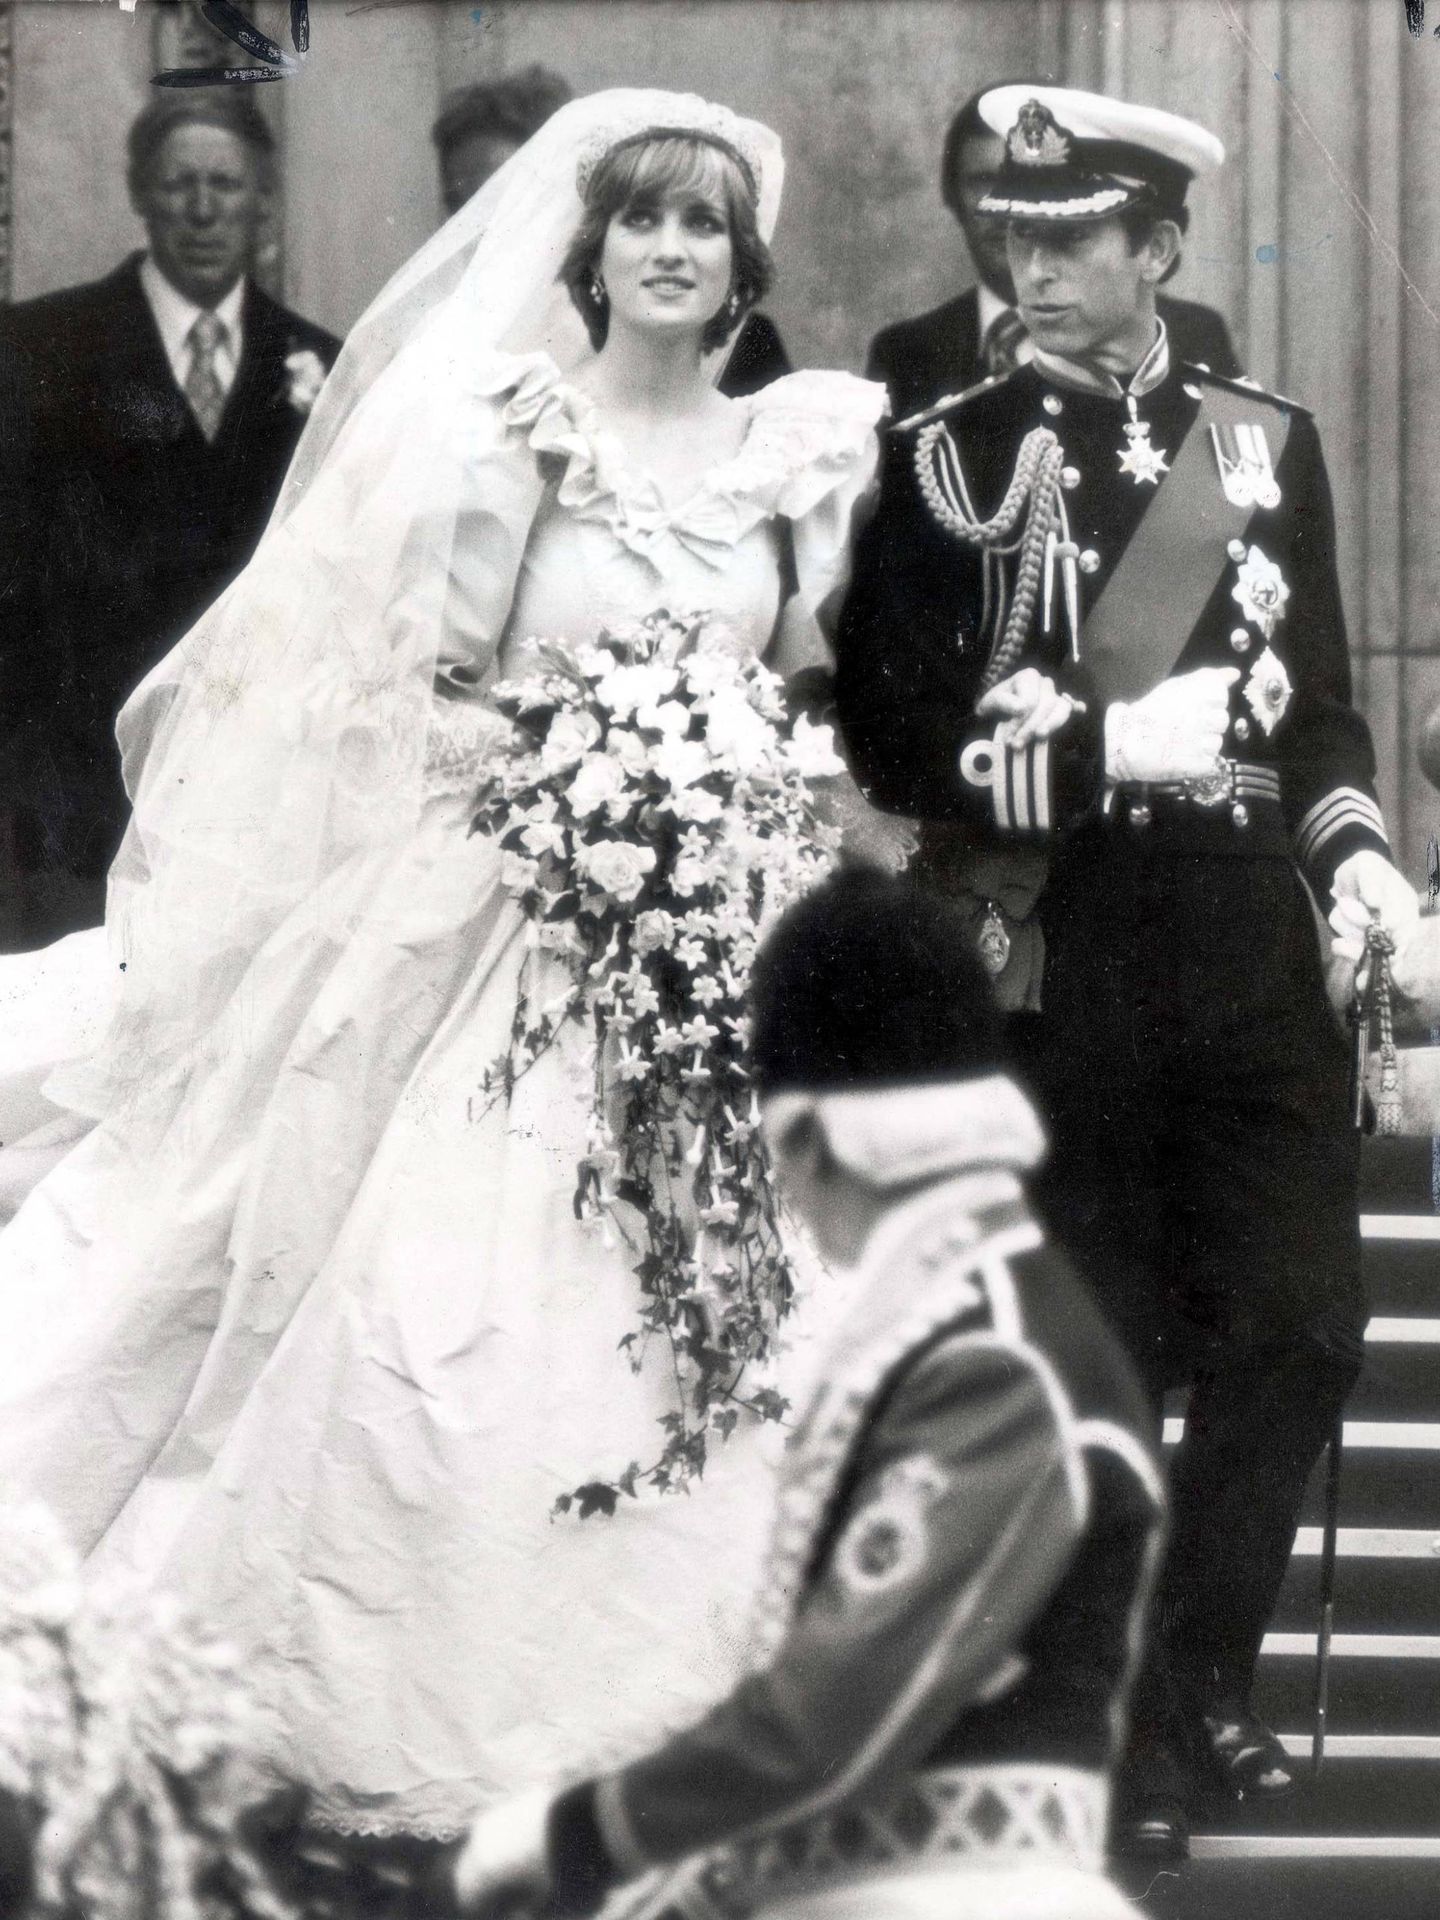 La boda de Carlos y Diana. (Cordon Press)